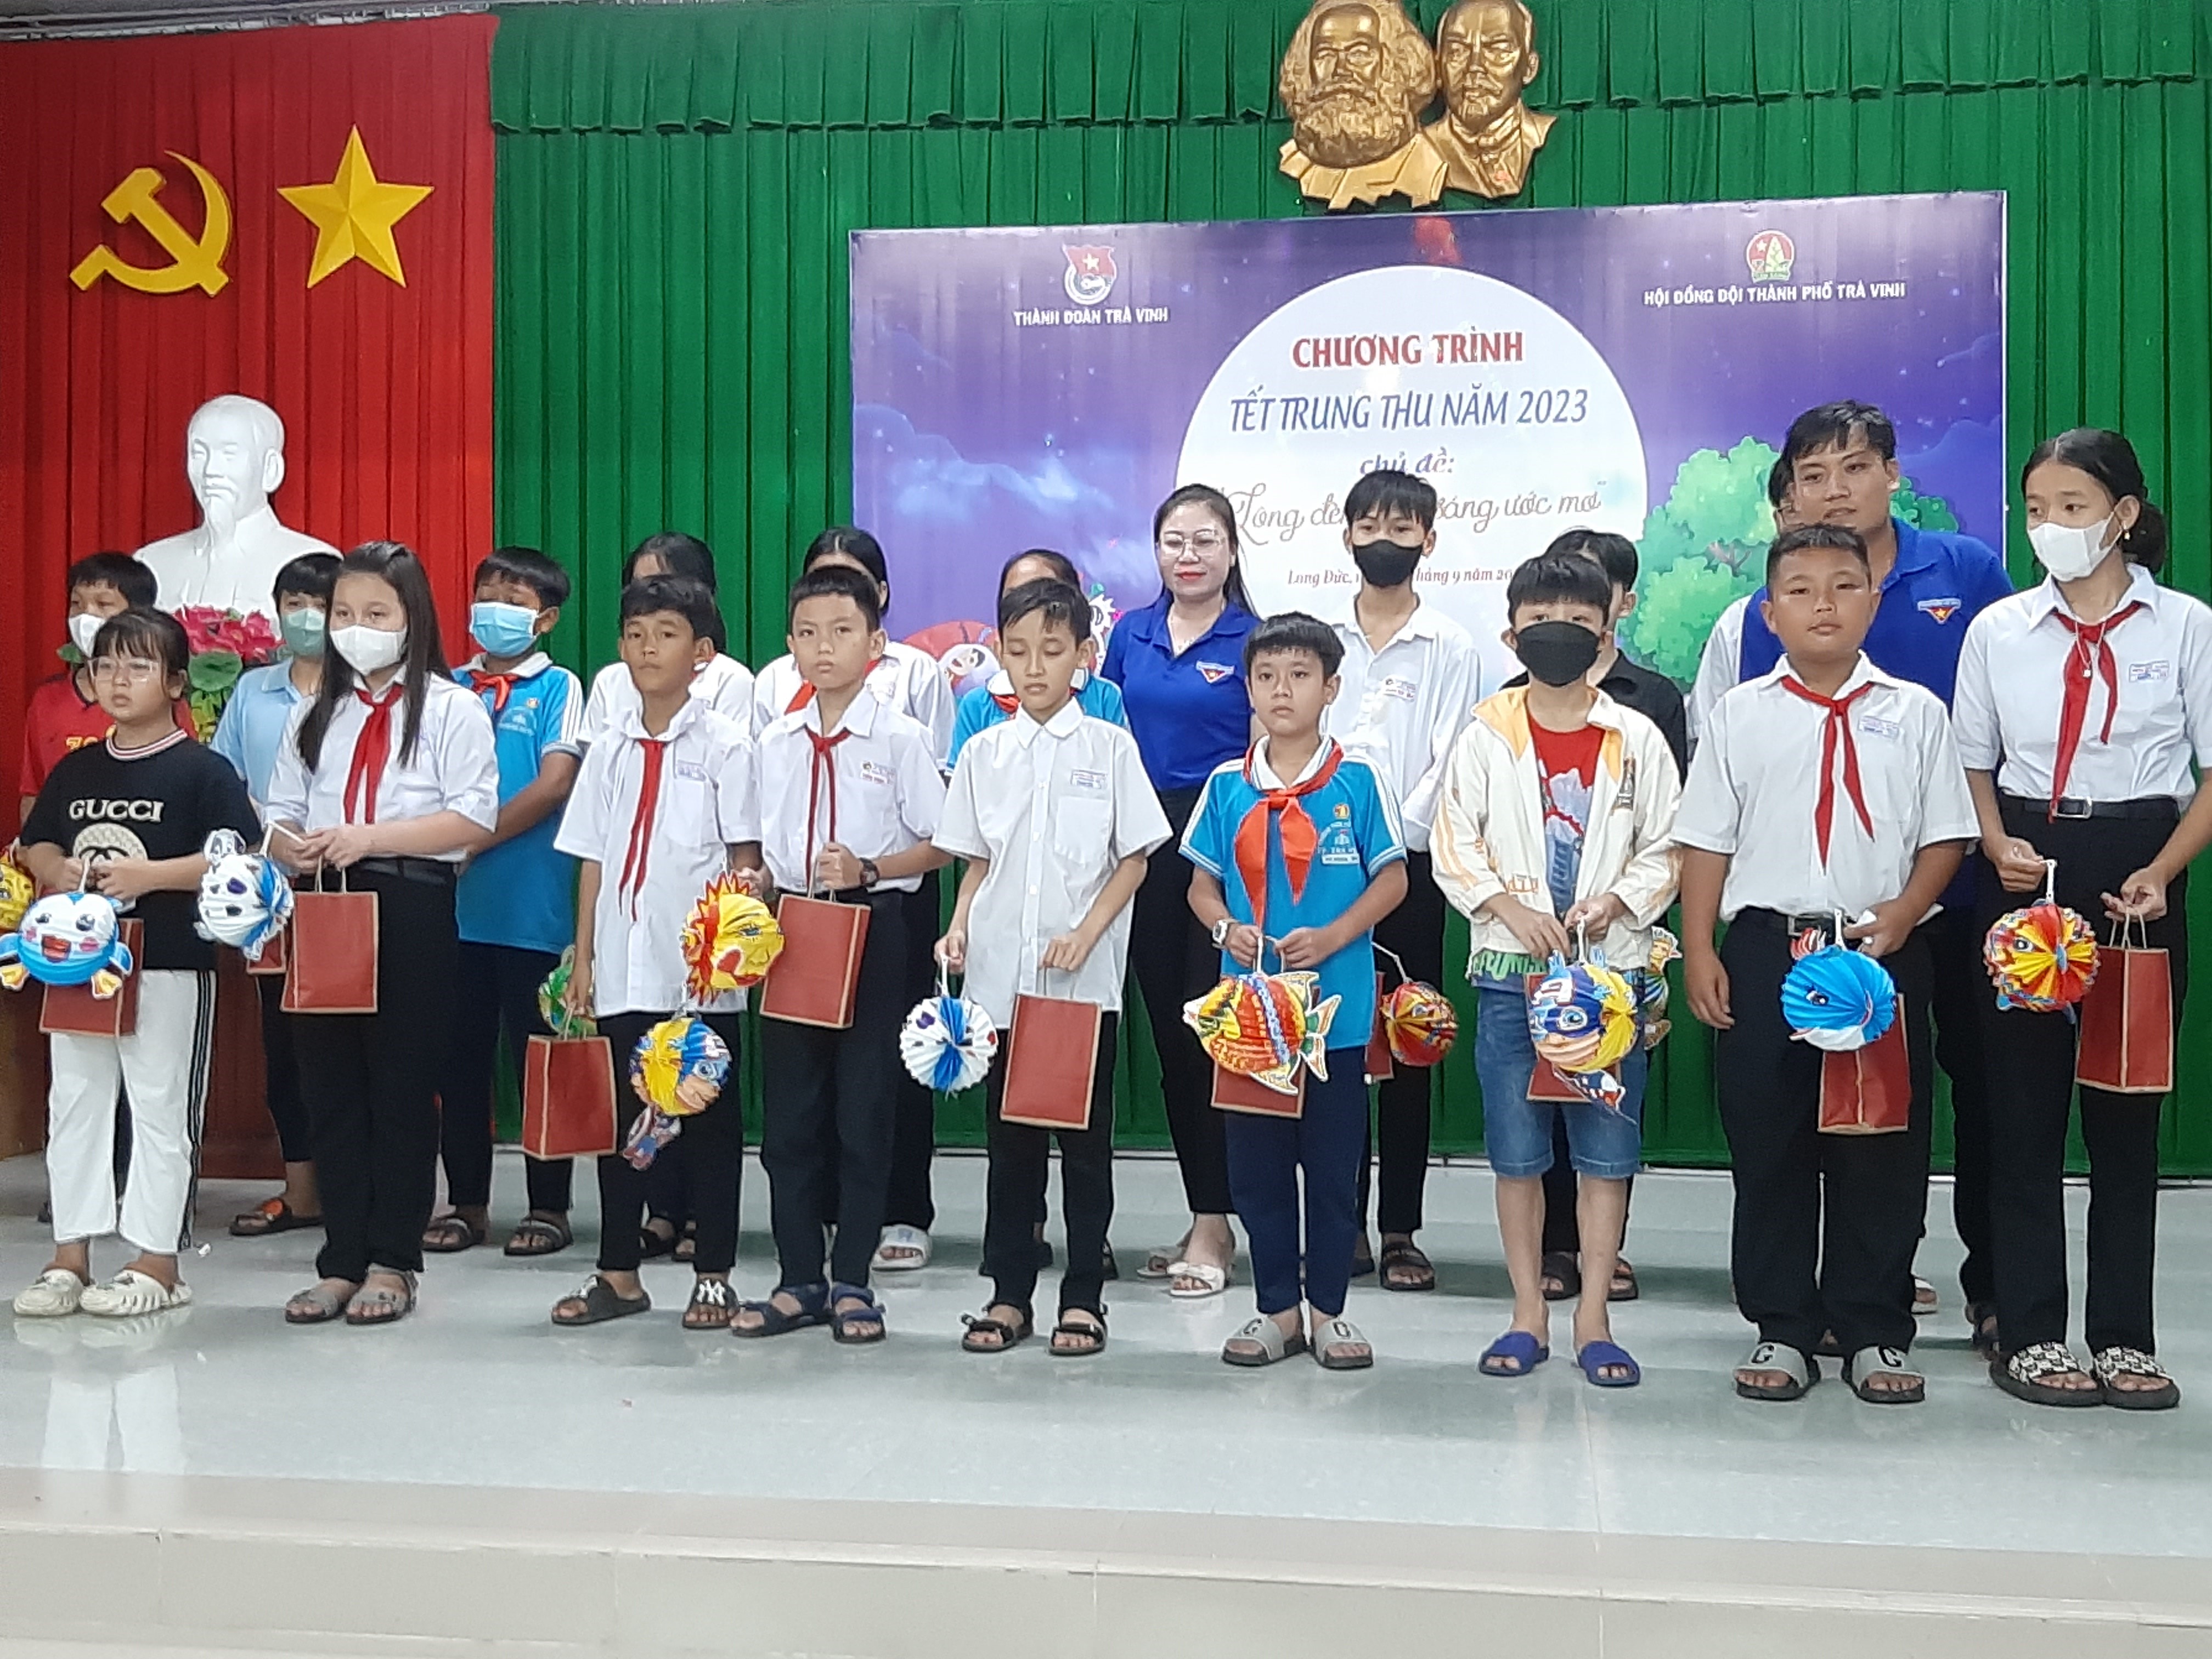 Thành Đoàn Trà Vinh và Trường tiểu học Minh Trí tổ chức Đêm hội trăng rằm năm 2023